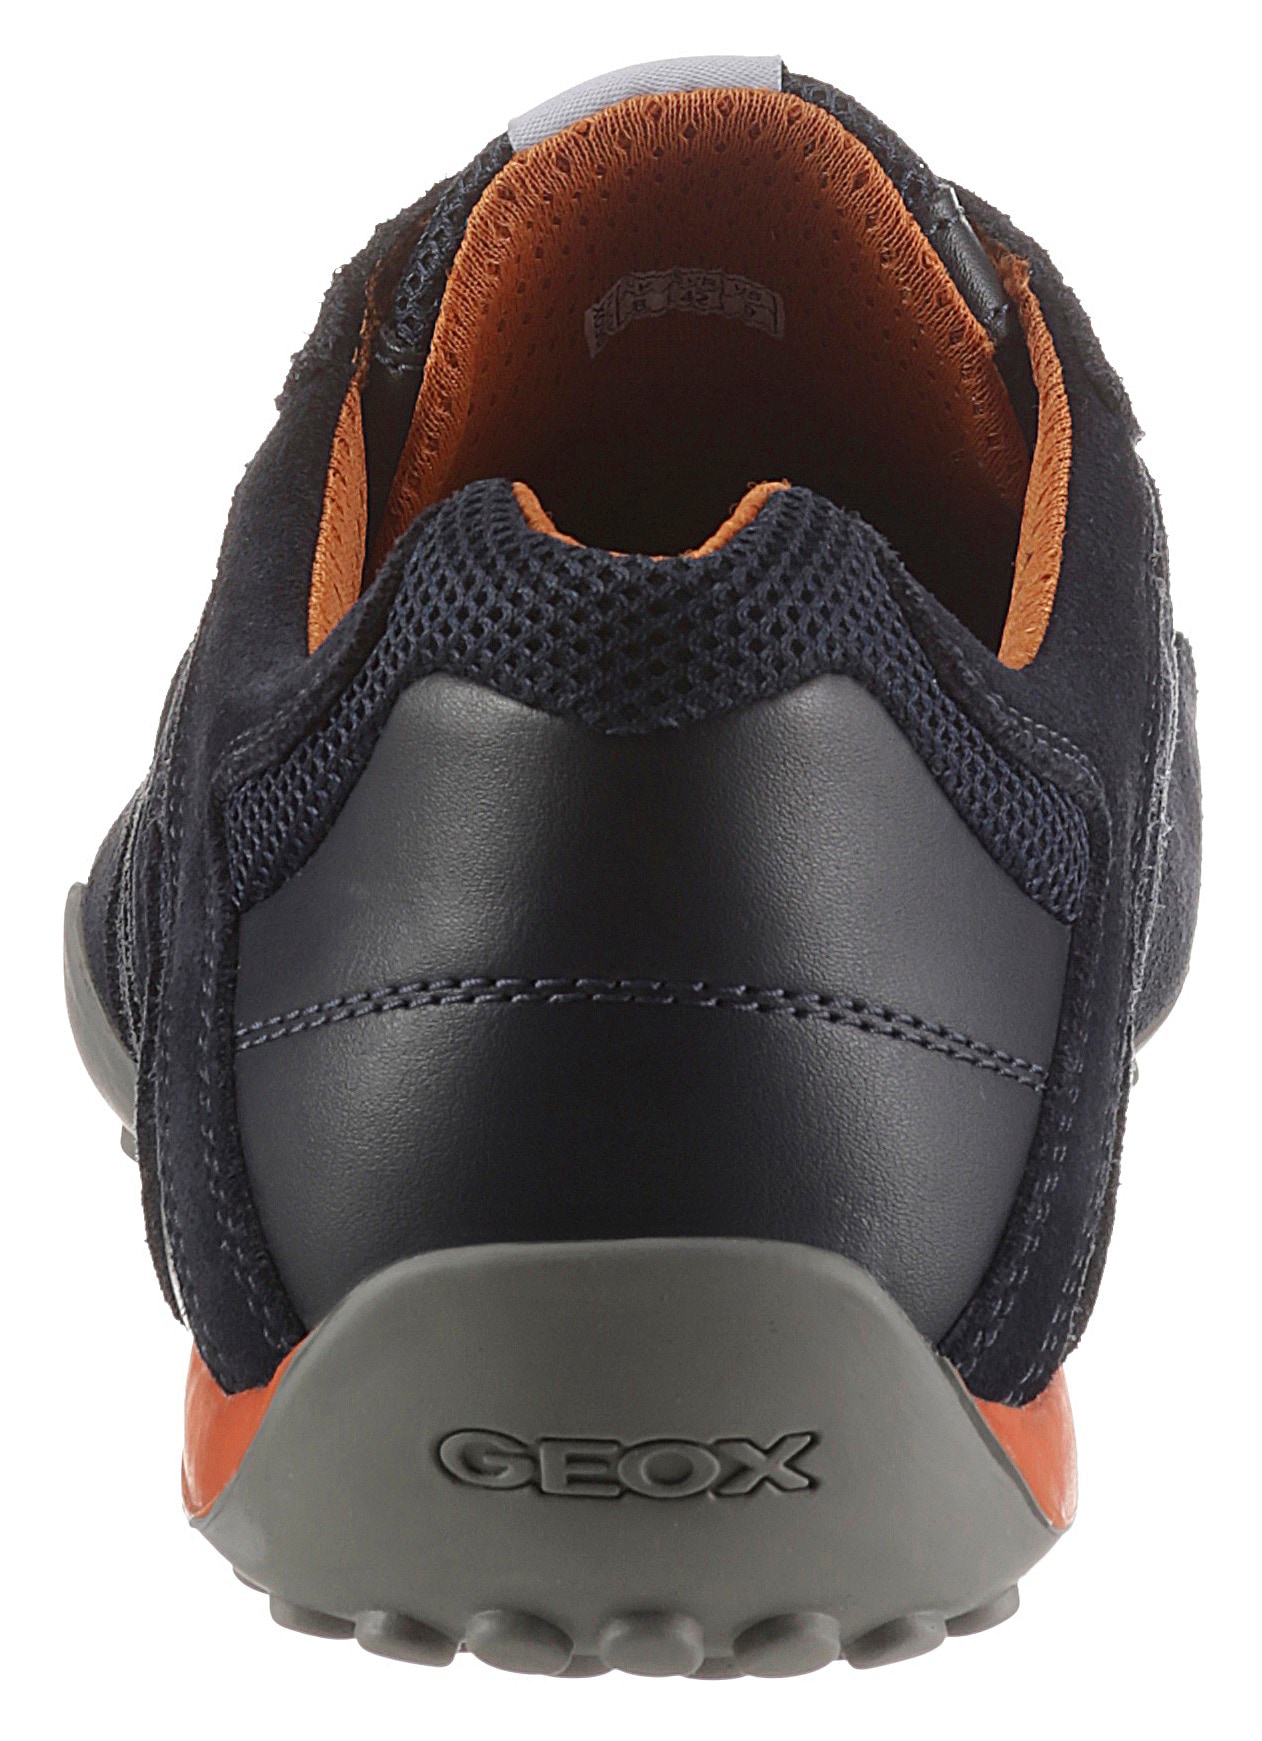 Geox Sneaker "Snake", mit Geox Spezial Membrane, Freizeitschuh, Halbschuh, günstig online kaufen